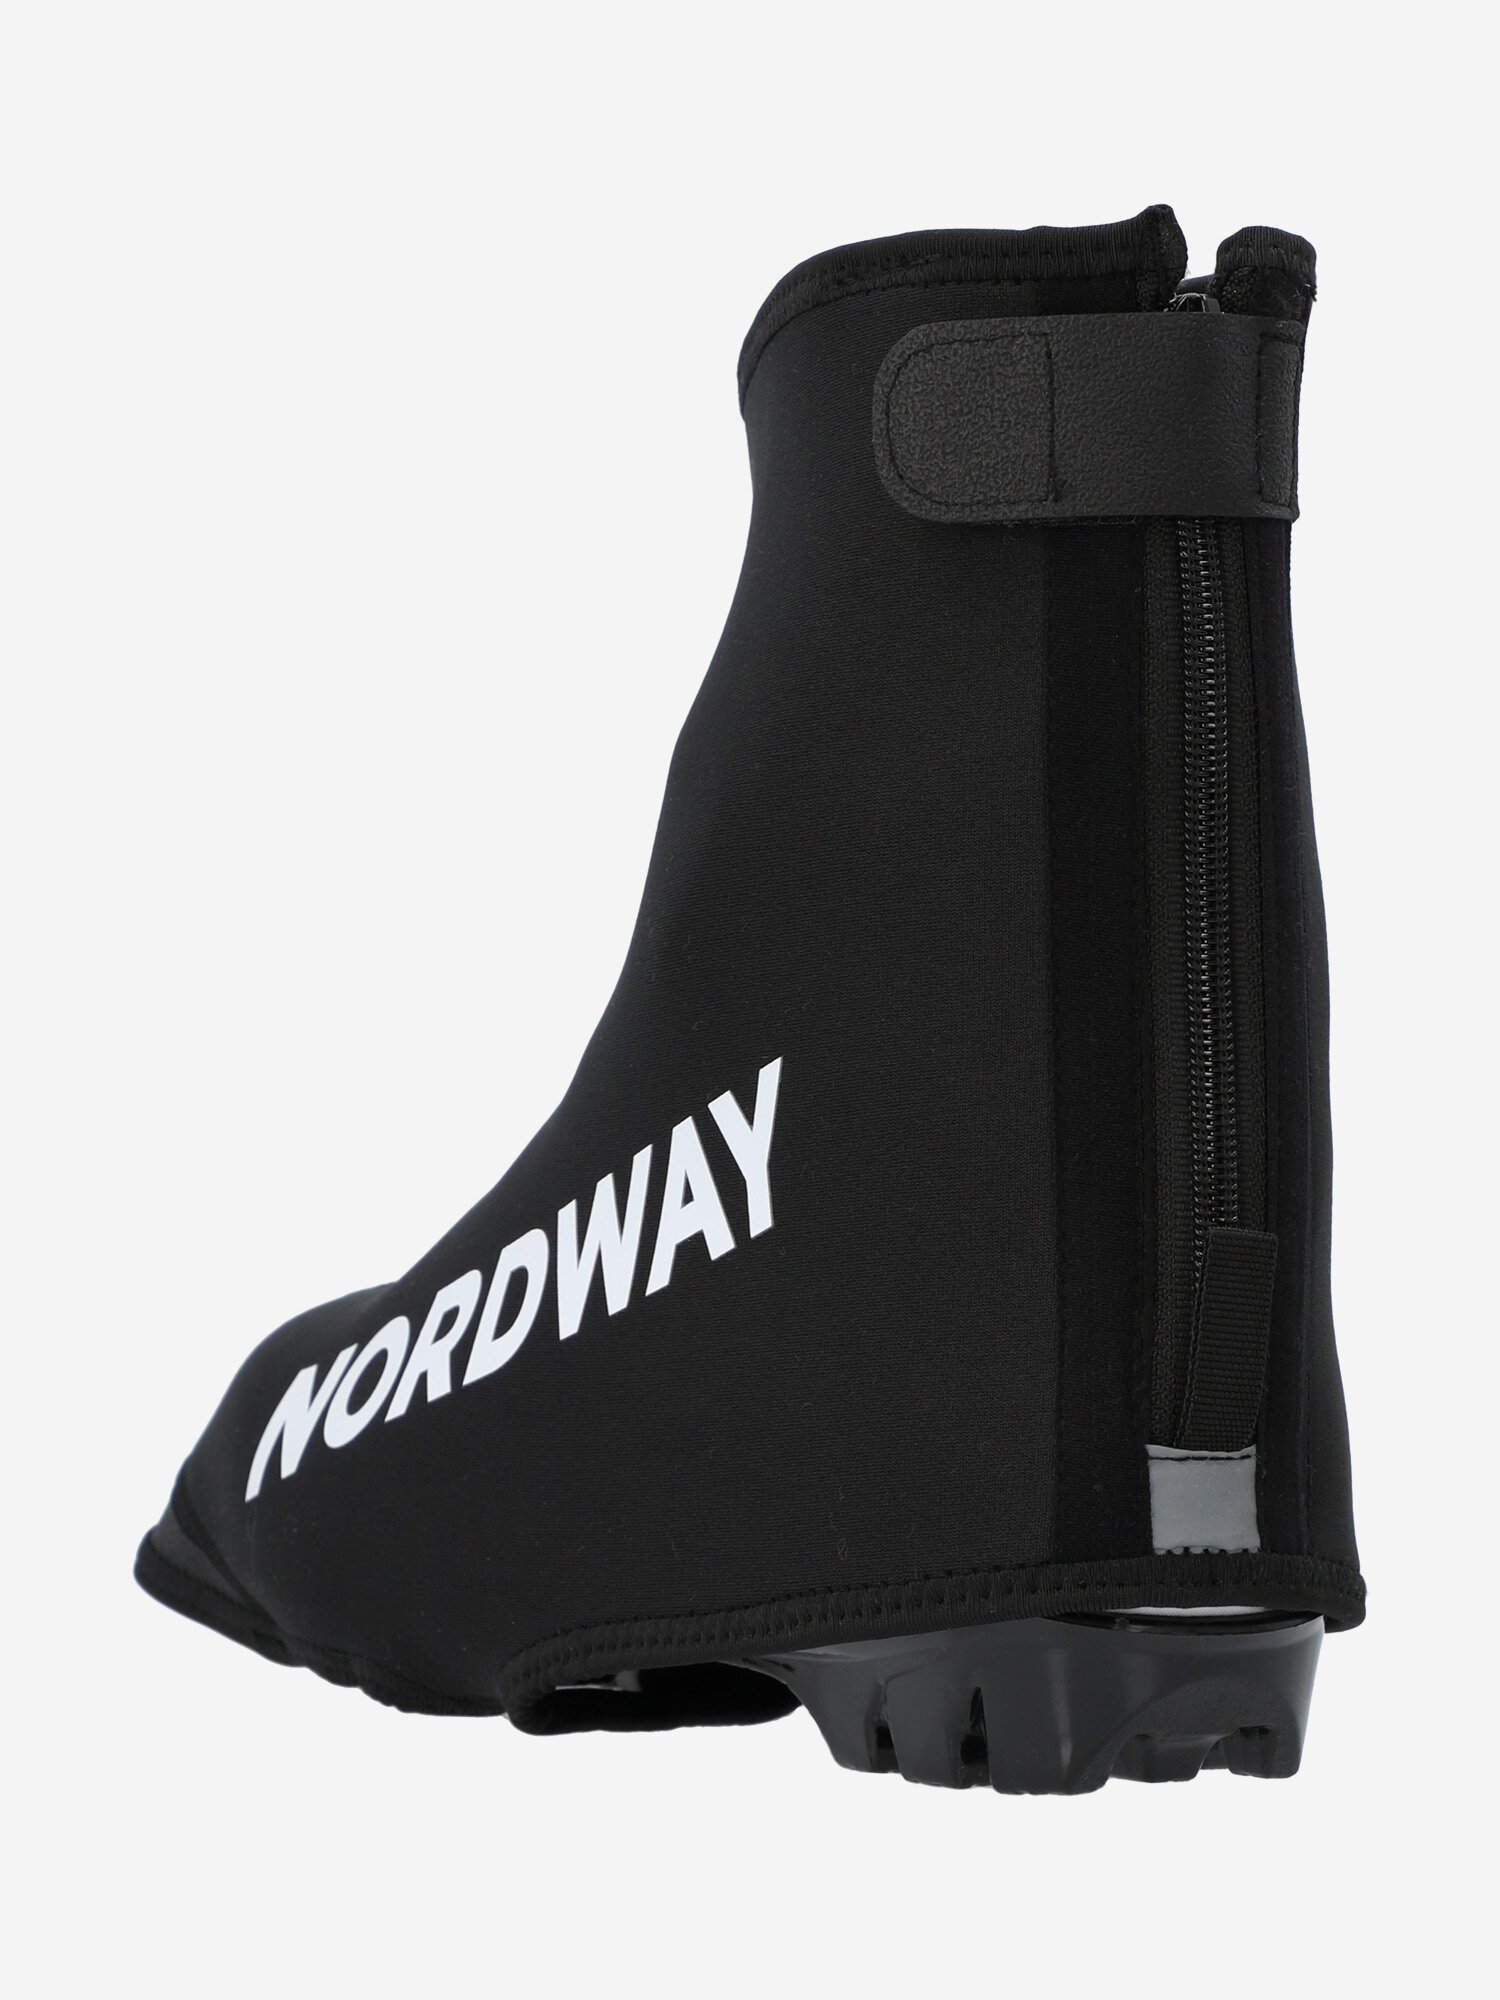 Чехол защитный для обуви Nordway Черный; RUS: Без размера, Ориг: one size